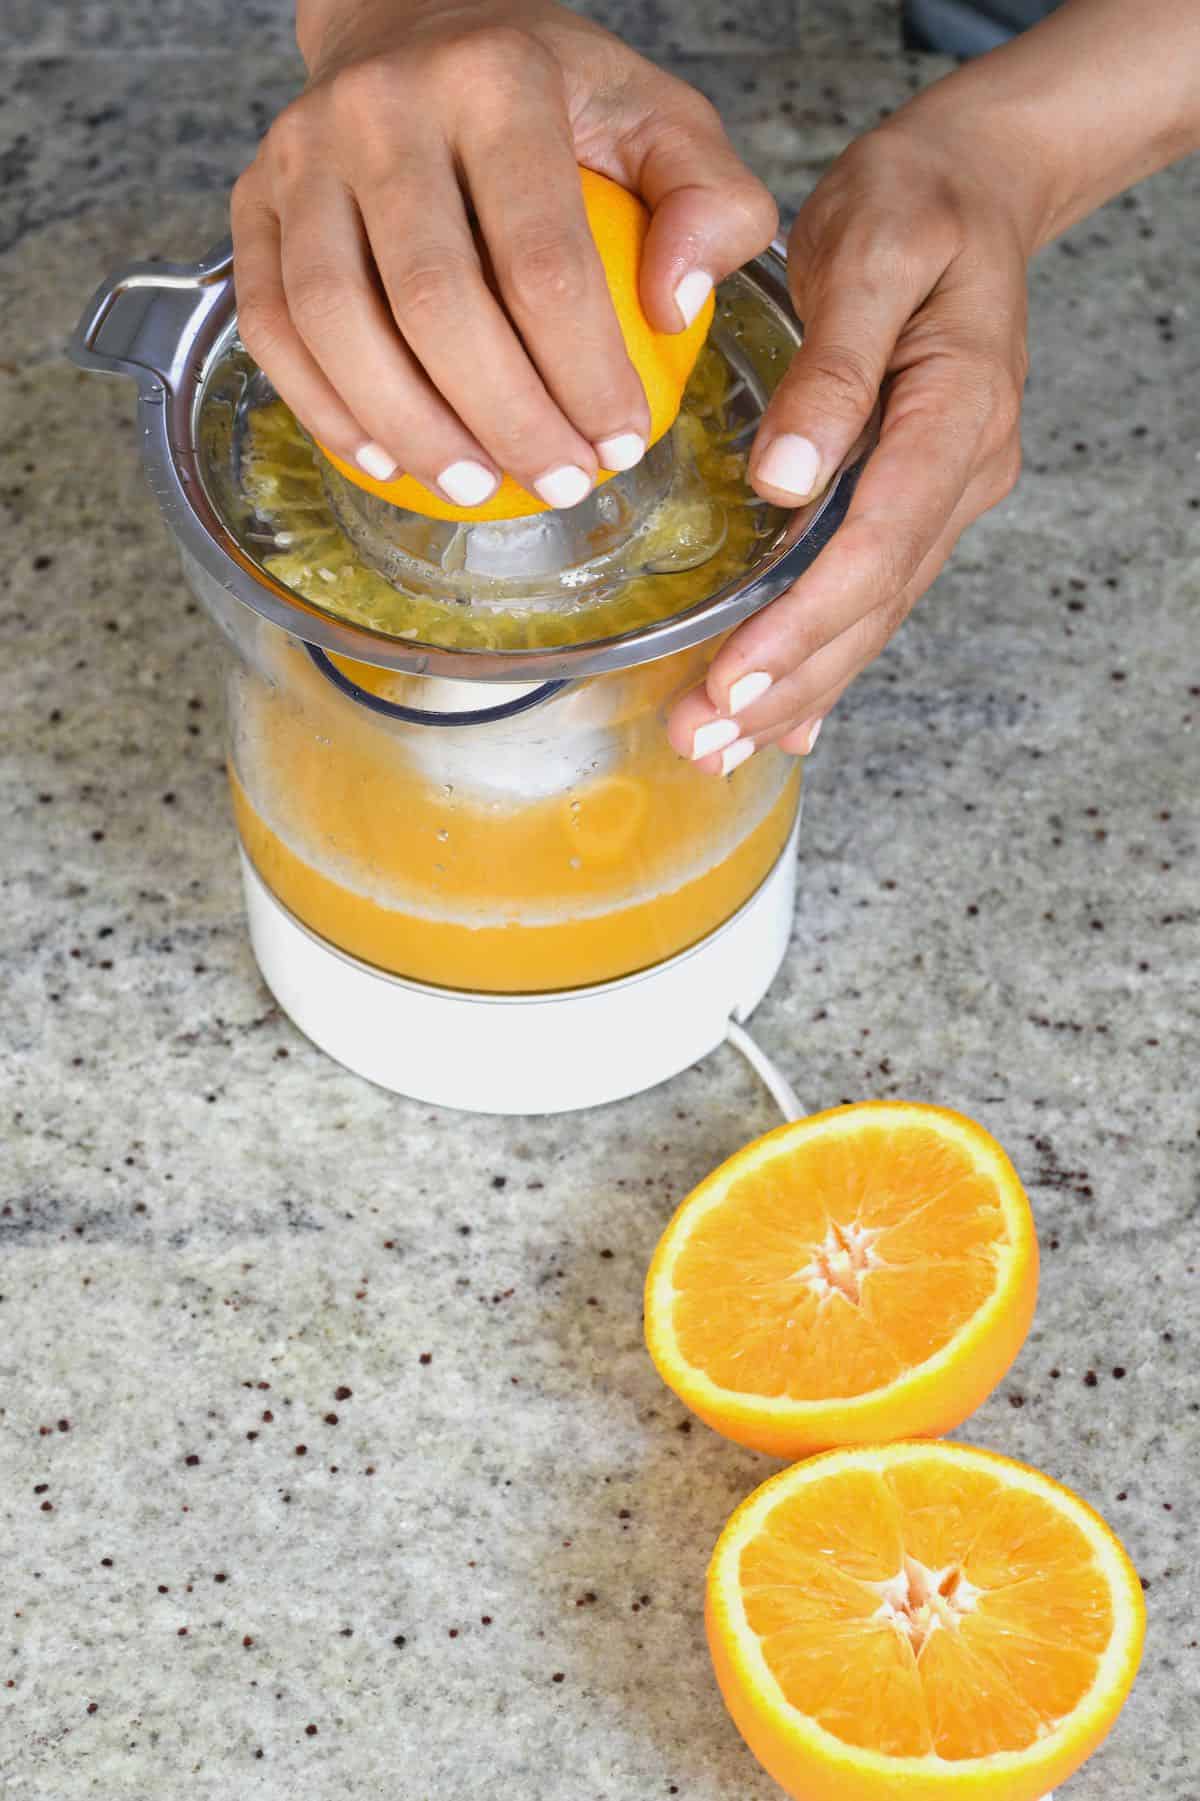 https://www.alphafoodie.com/wp-content/uploads/2021/07/Pineapple-Orange-Juice-Juicing-oranges.jpeg